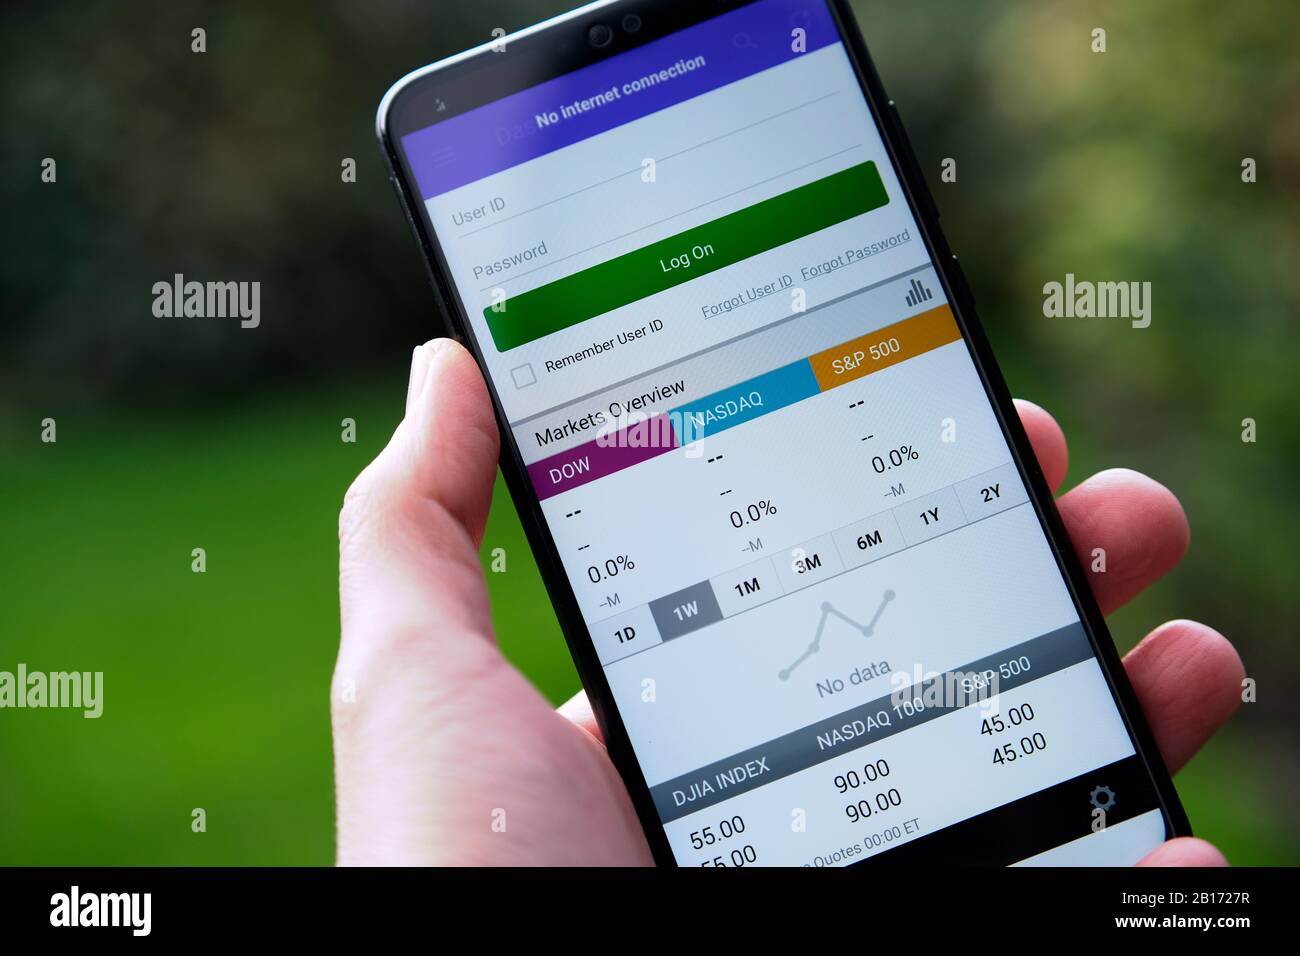 La schermata di accesso dell'app e-TRADE visualizzata sullo smartphone è in mano. Foto Stock